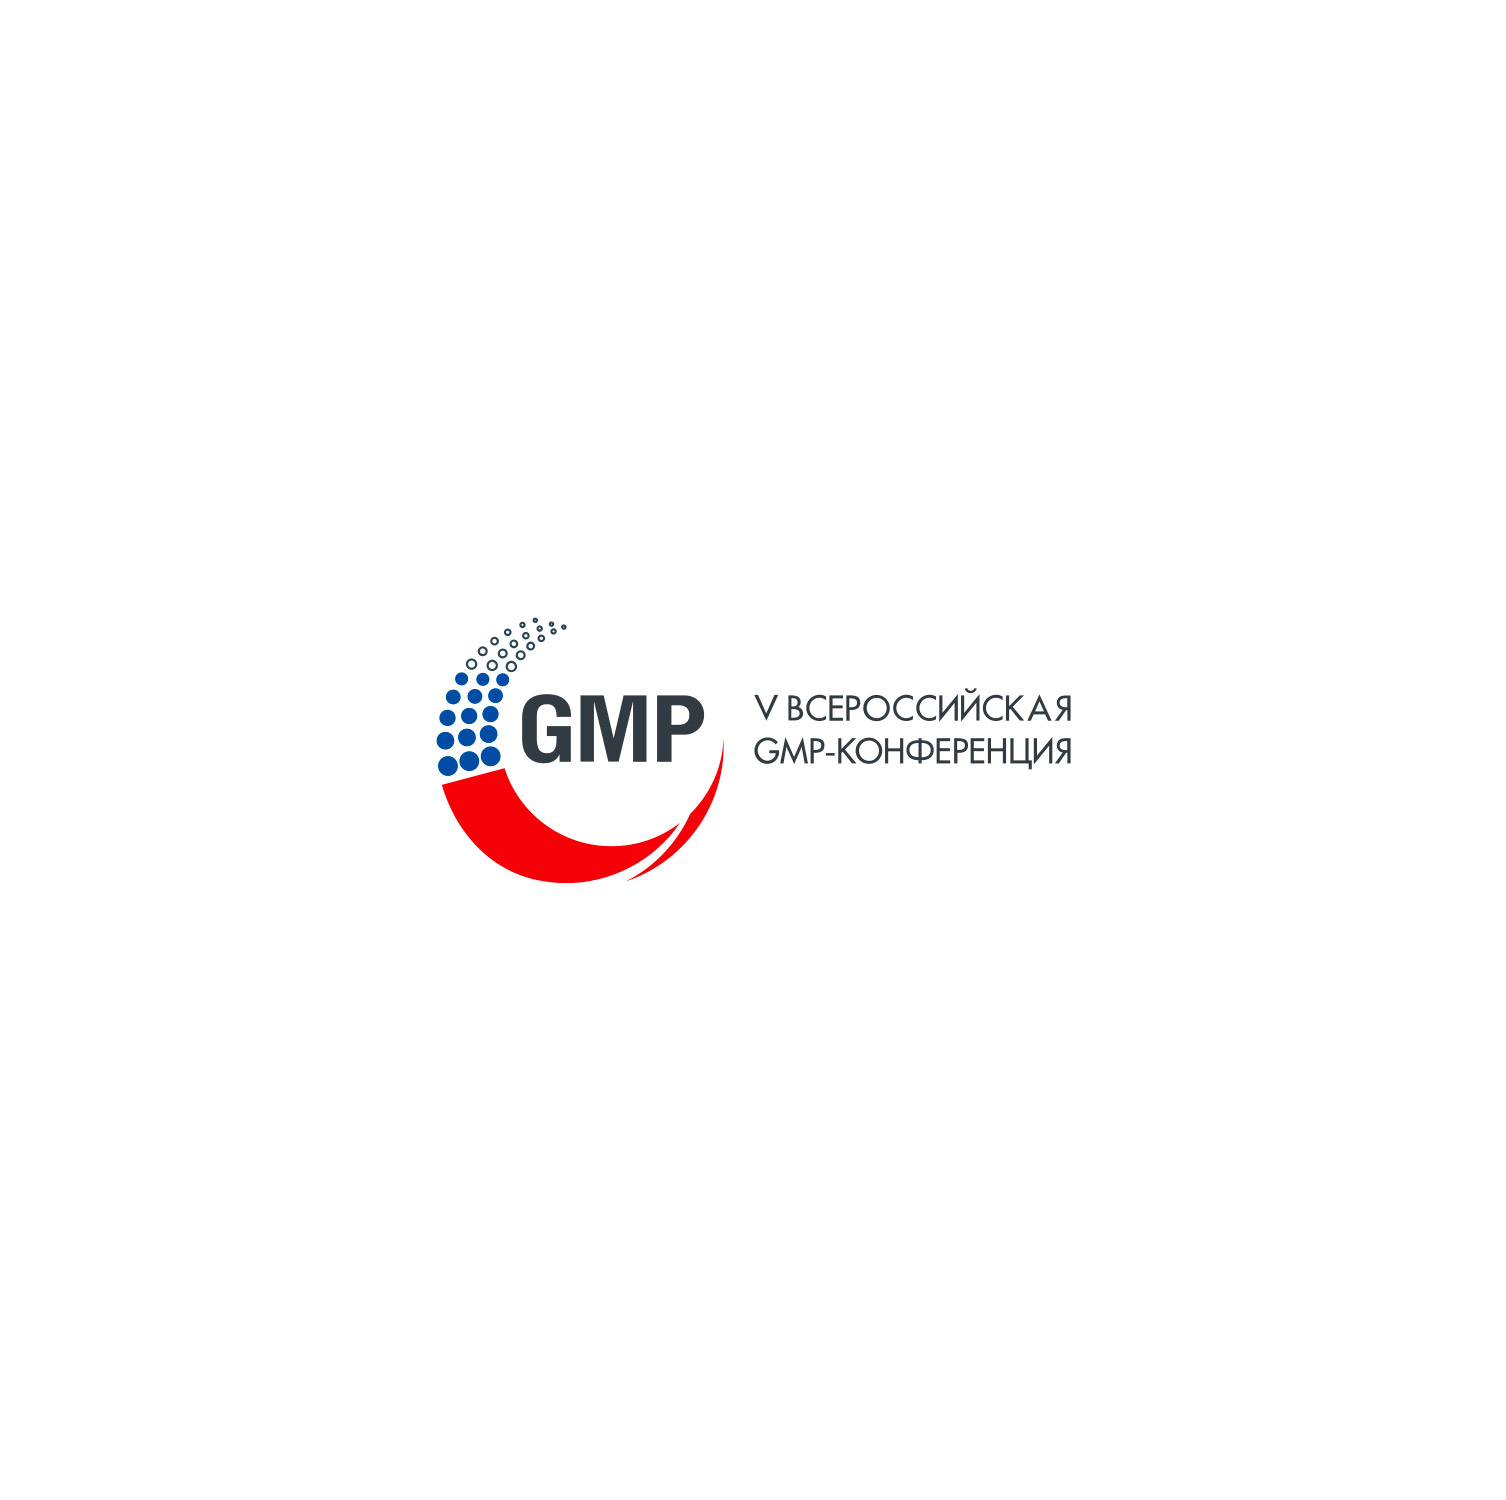 Приглашаем на 5-ю Всероссийскую GMP-конференцию